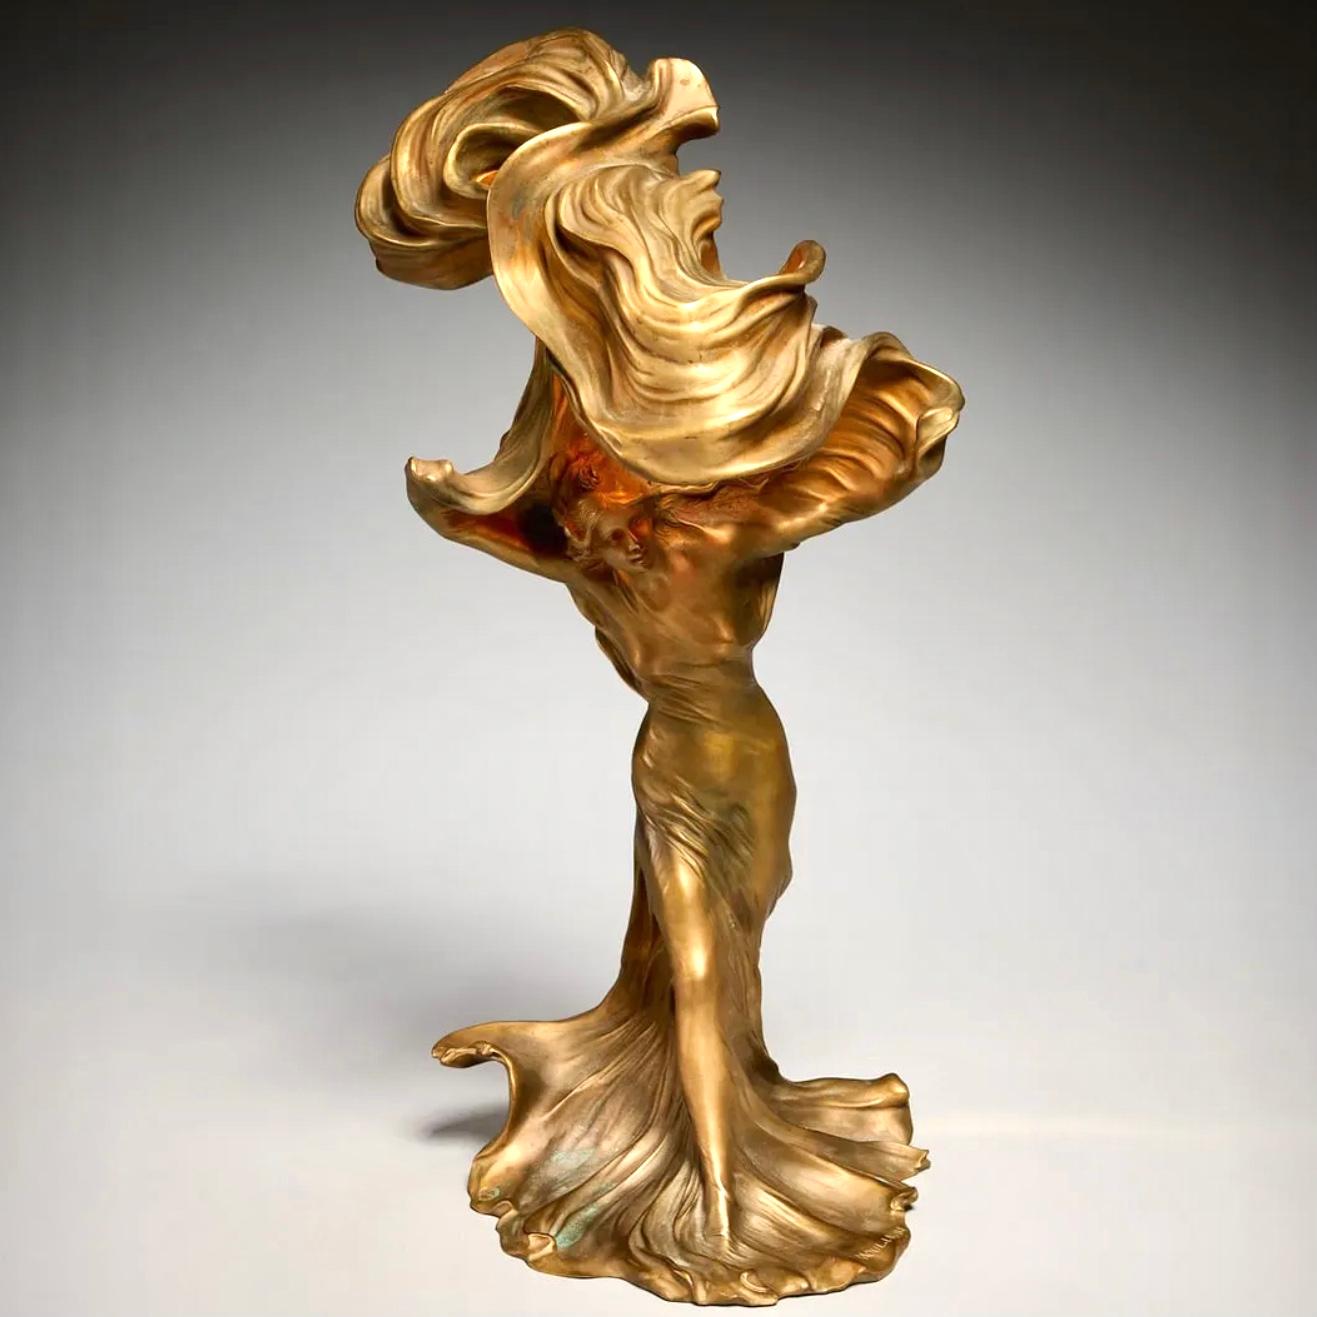 Francois-Raoul Larche 'Loie Fuller' Vergoldete Bronze Figurale Tischlampe

Die Spitze der Bronze-Jugendstil-Lampen für Ihre Betrachtung. Diese besondere Raoul Larch Lampe hat eine schöne Bronze vergoldet Farbe, die nicht ein helles Gold ist. Die